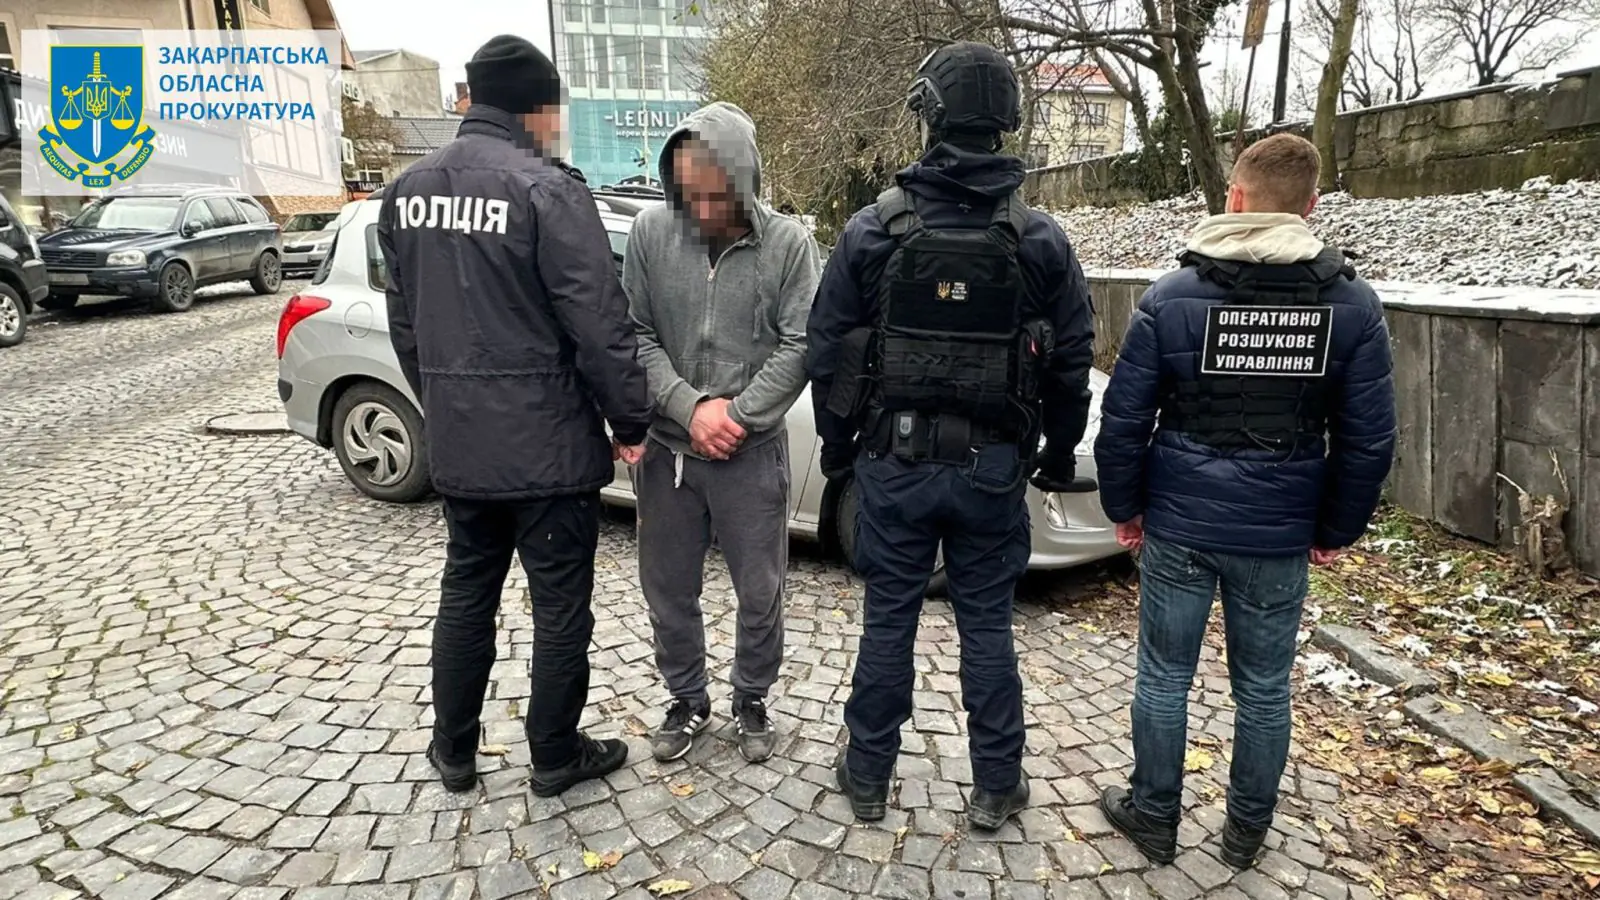  В Ужгороді правоохоронці викрили та ліквідували групу наркодилерів – затримано п’ятьох осіб 4